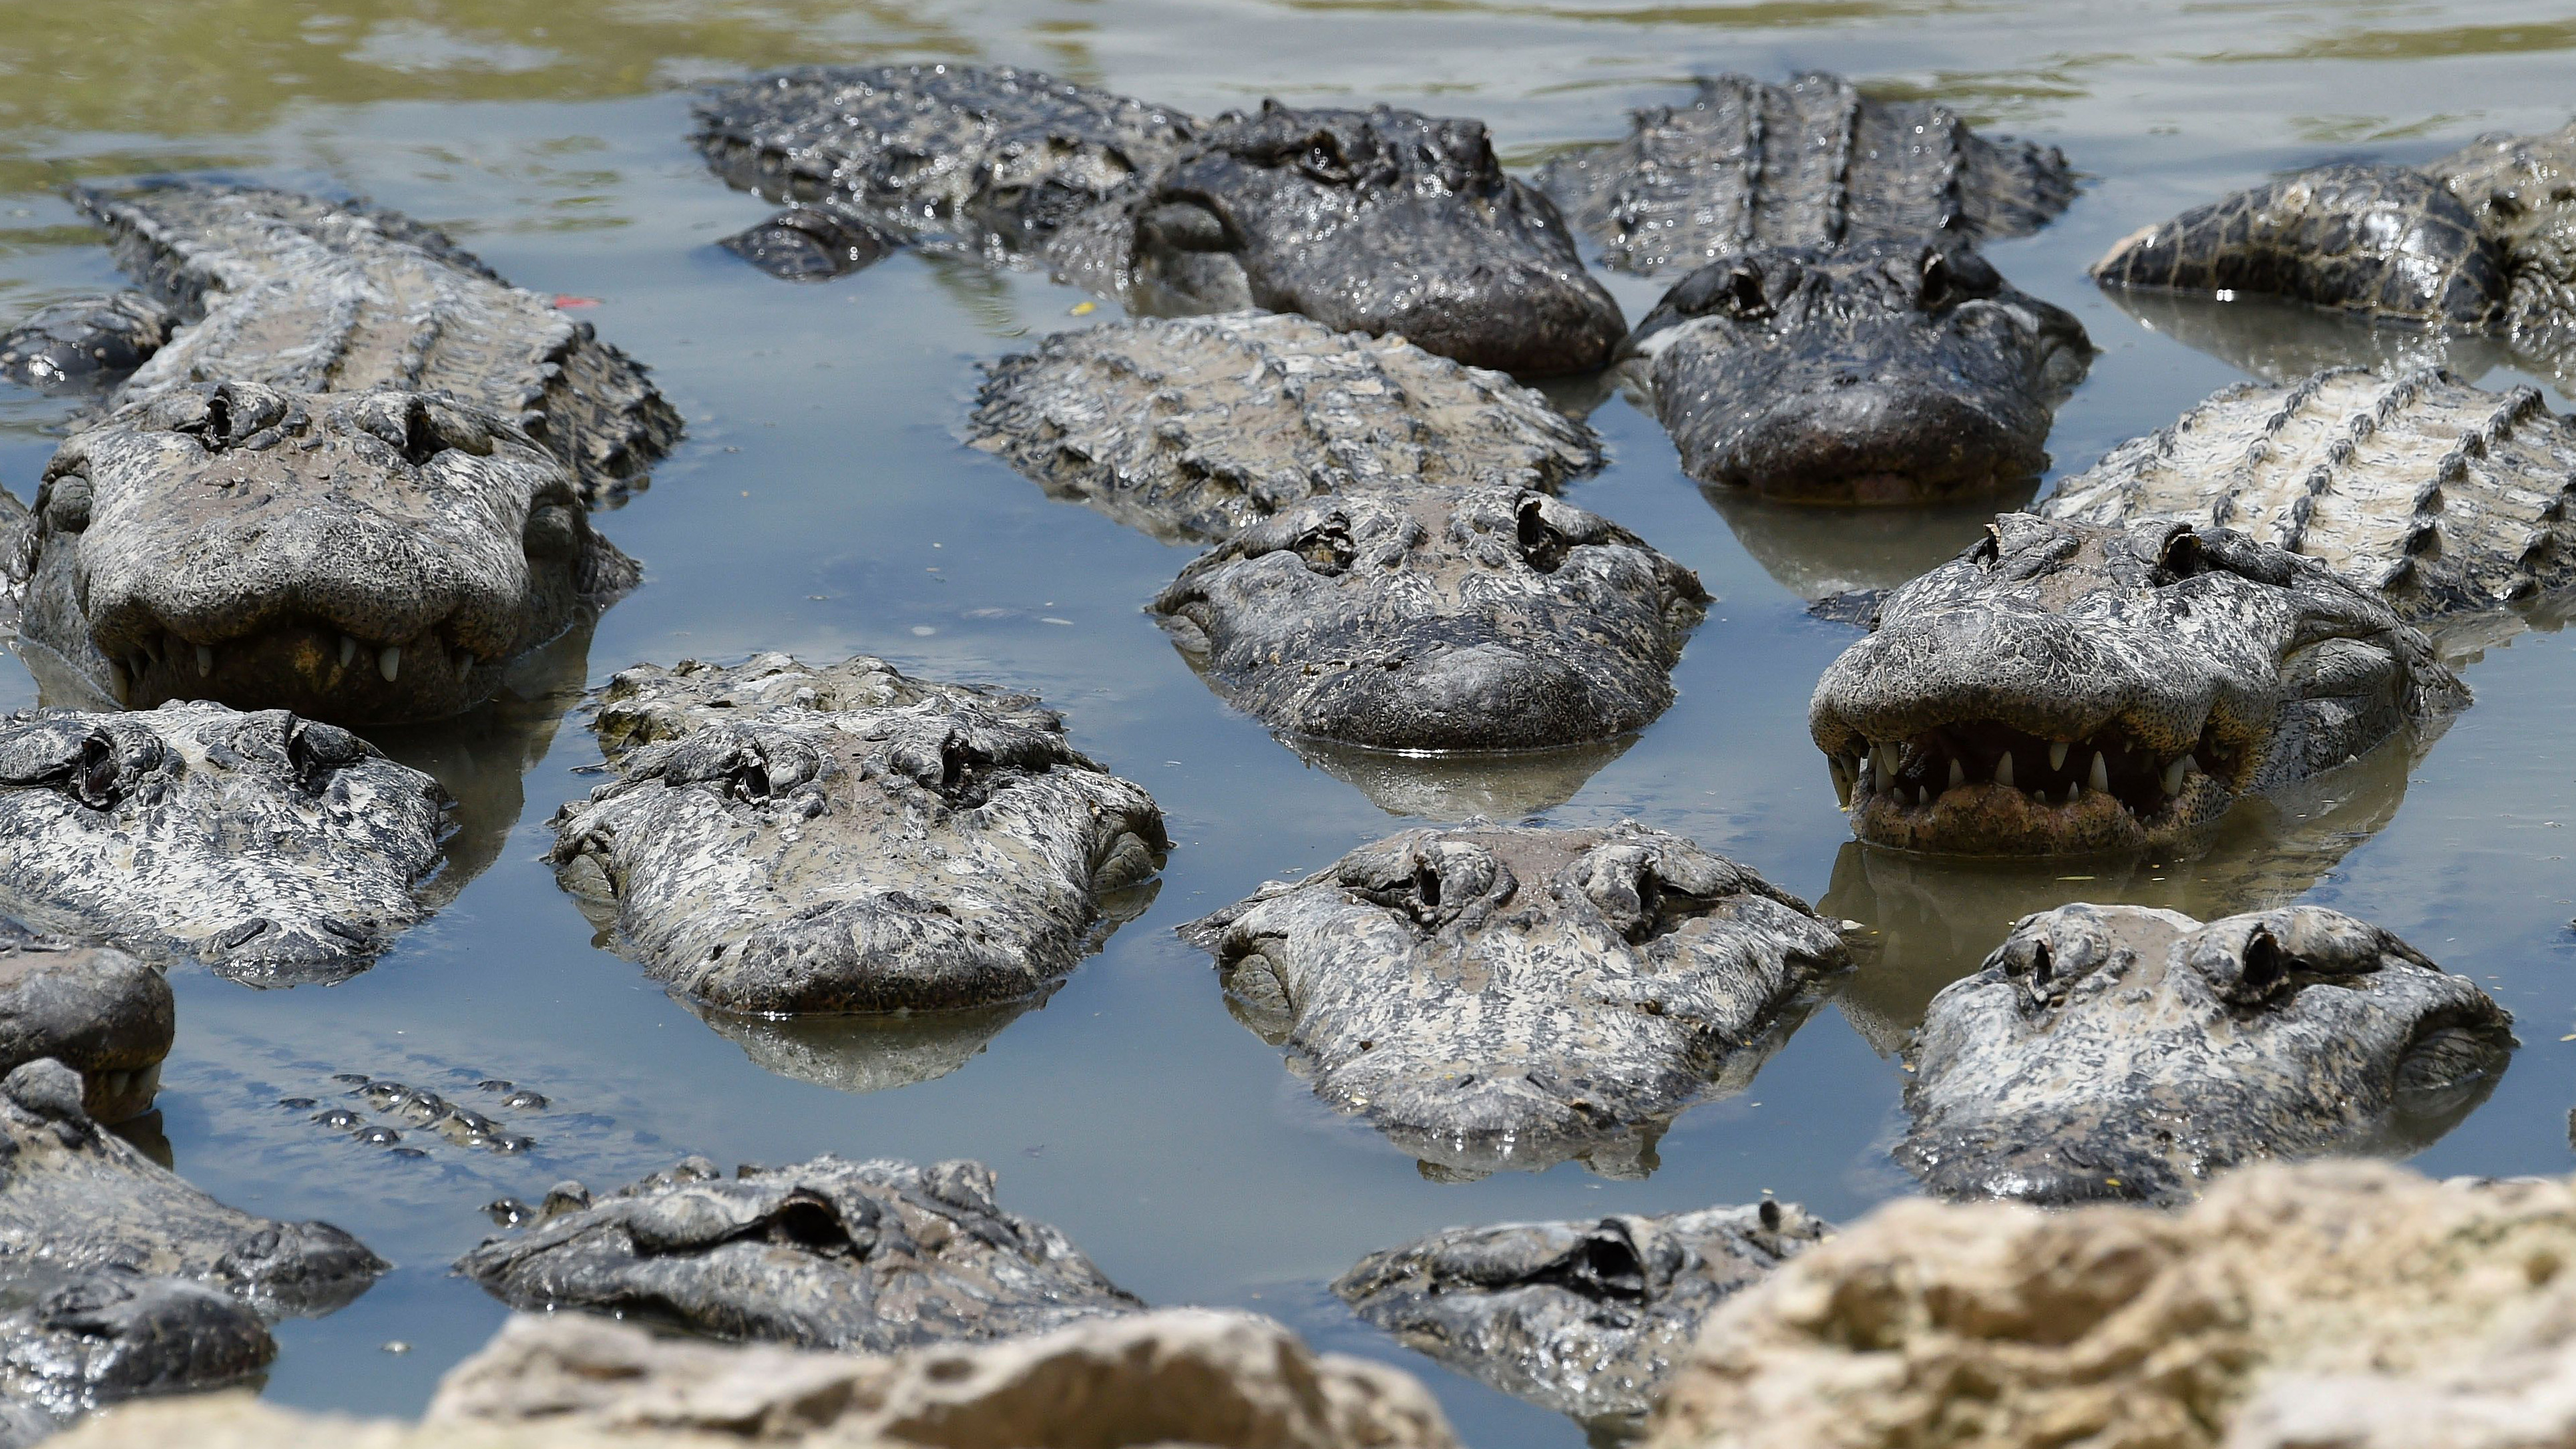 Auf dem Bild sieht man ein flaches Gewässer, in dem sich rund ein Dutzend Alligatoren tummeln. Bedrohlich schwimmen sie auf die Kamera zu.